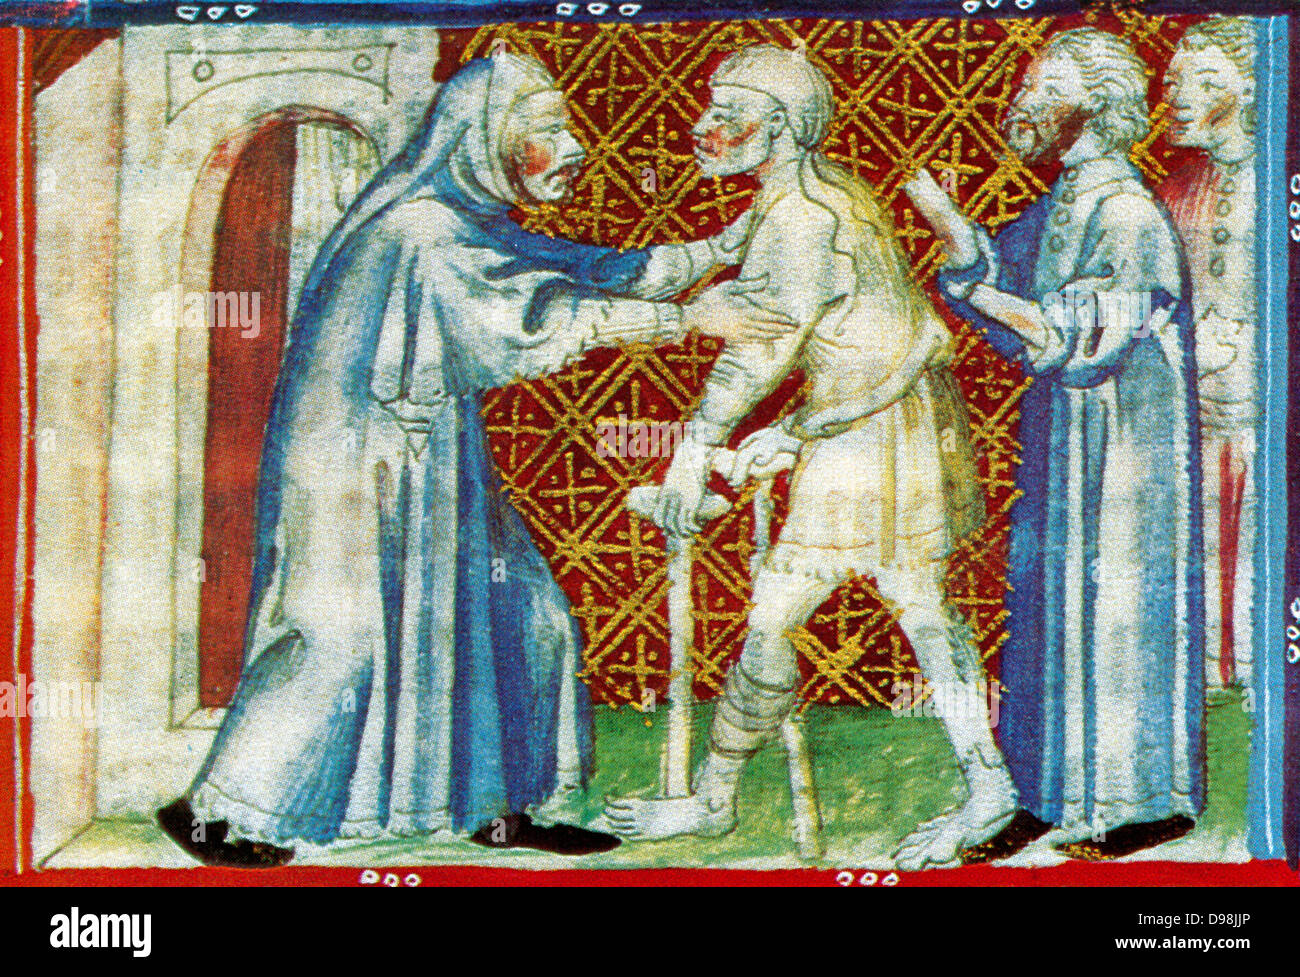 Scena dal XIV secolo, manoscritto illustrato i breviari d'amor. Essa illustra i sette atti di misericordia. Qui viene mostrato il ricovero di senzatetto Foto Stock